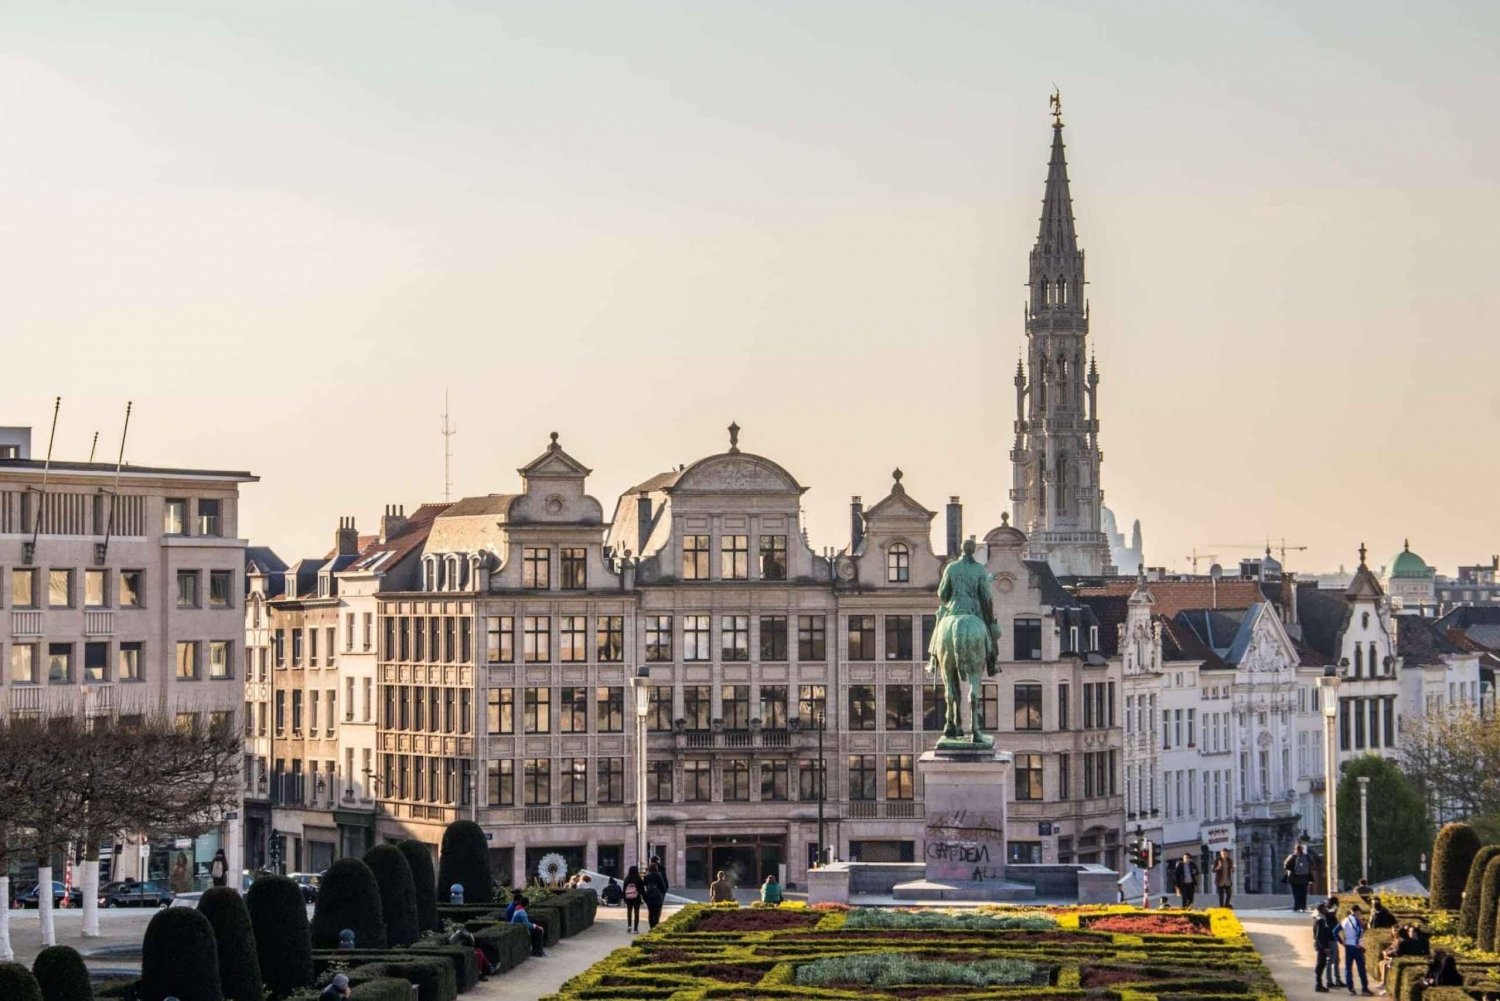 Brussel: Fotoshoot ervaring